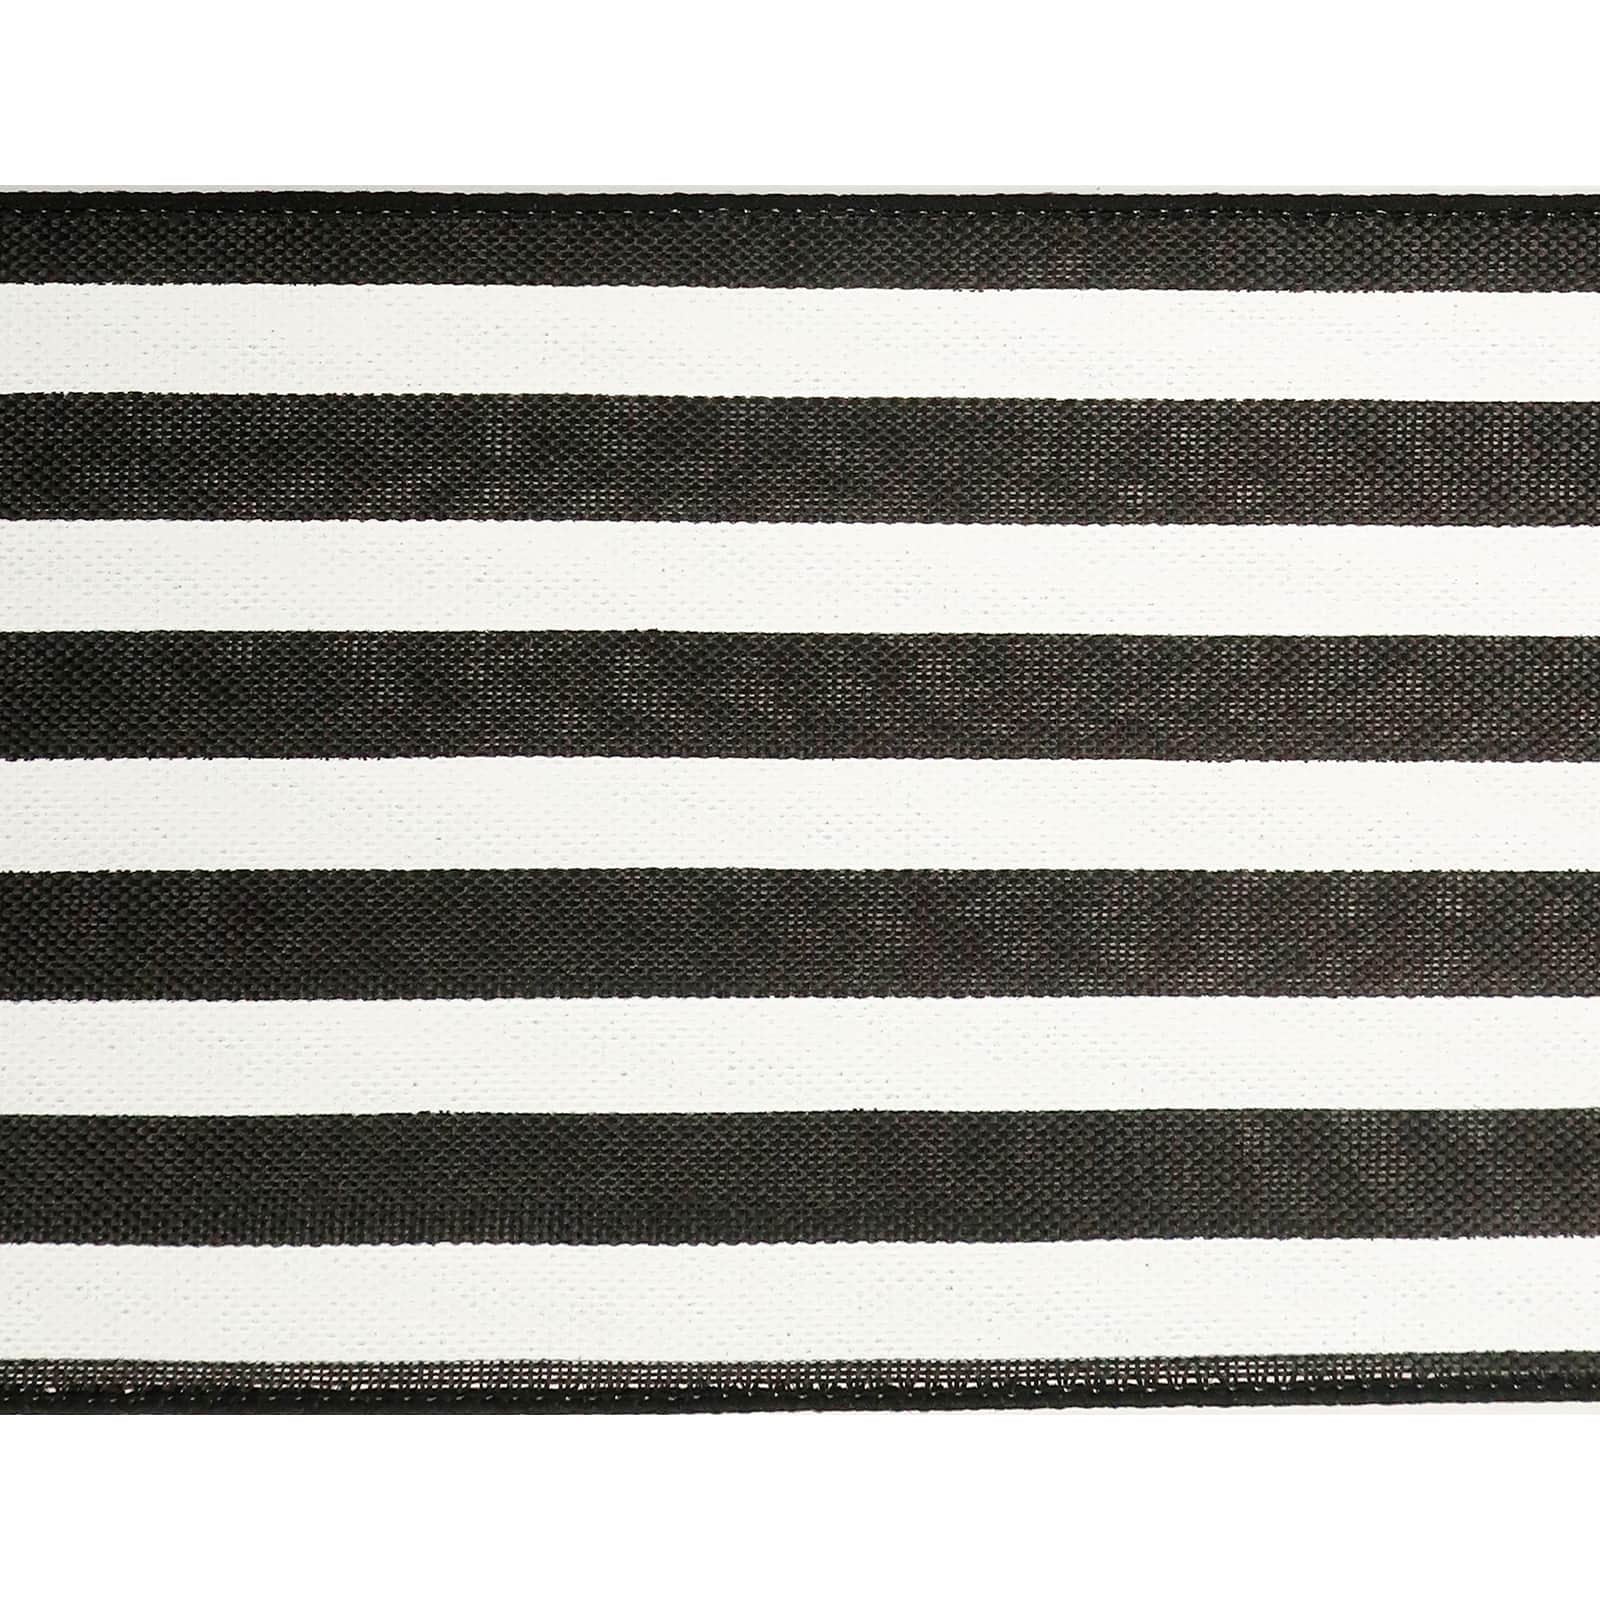 2.5 Linen Race Check Ribbon: Black & White (50 Yards) [851-40-302